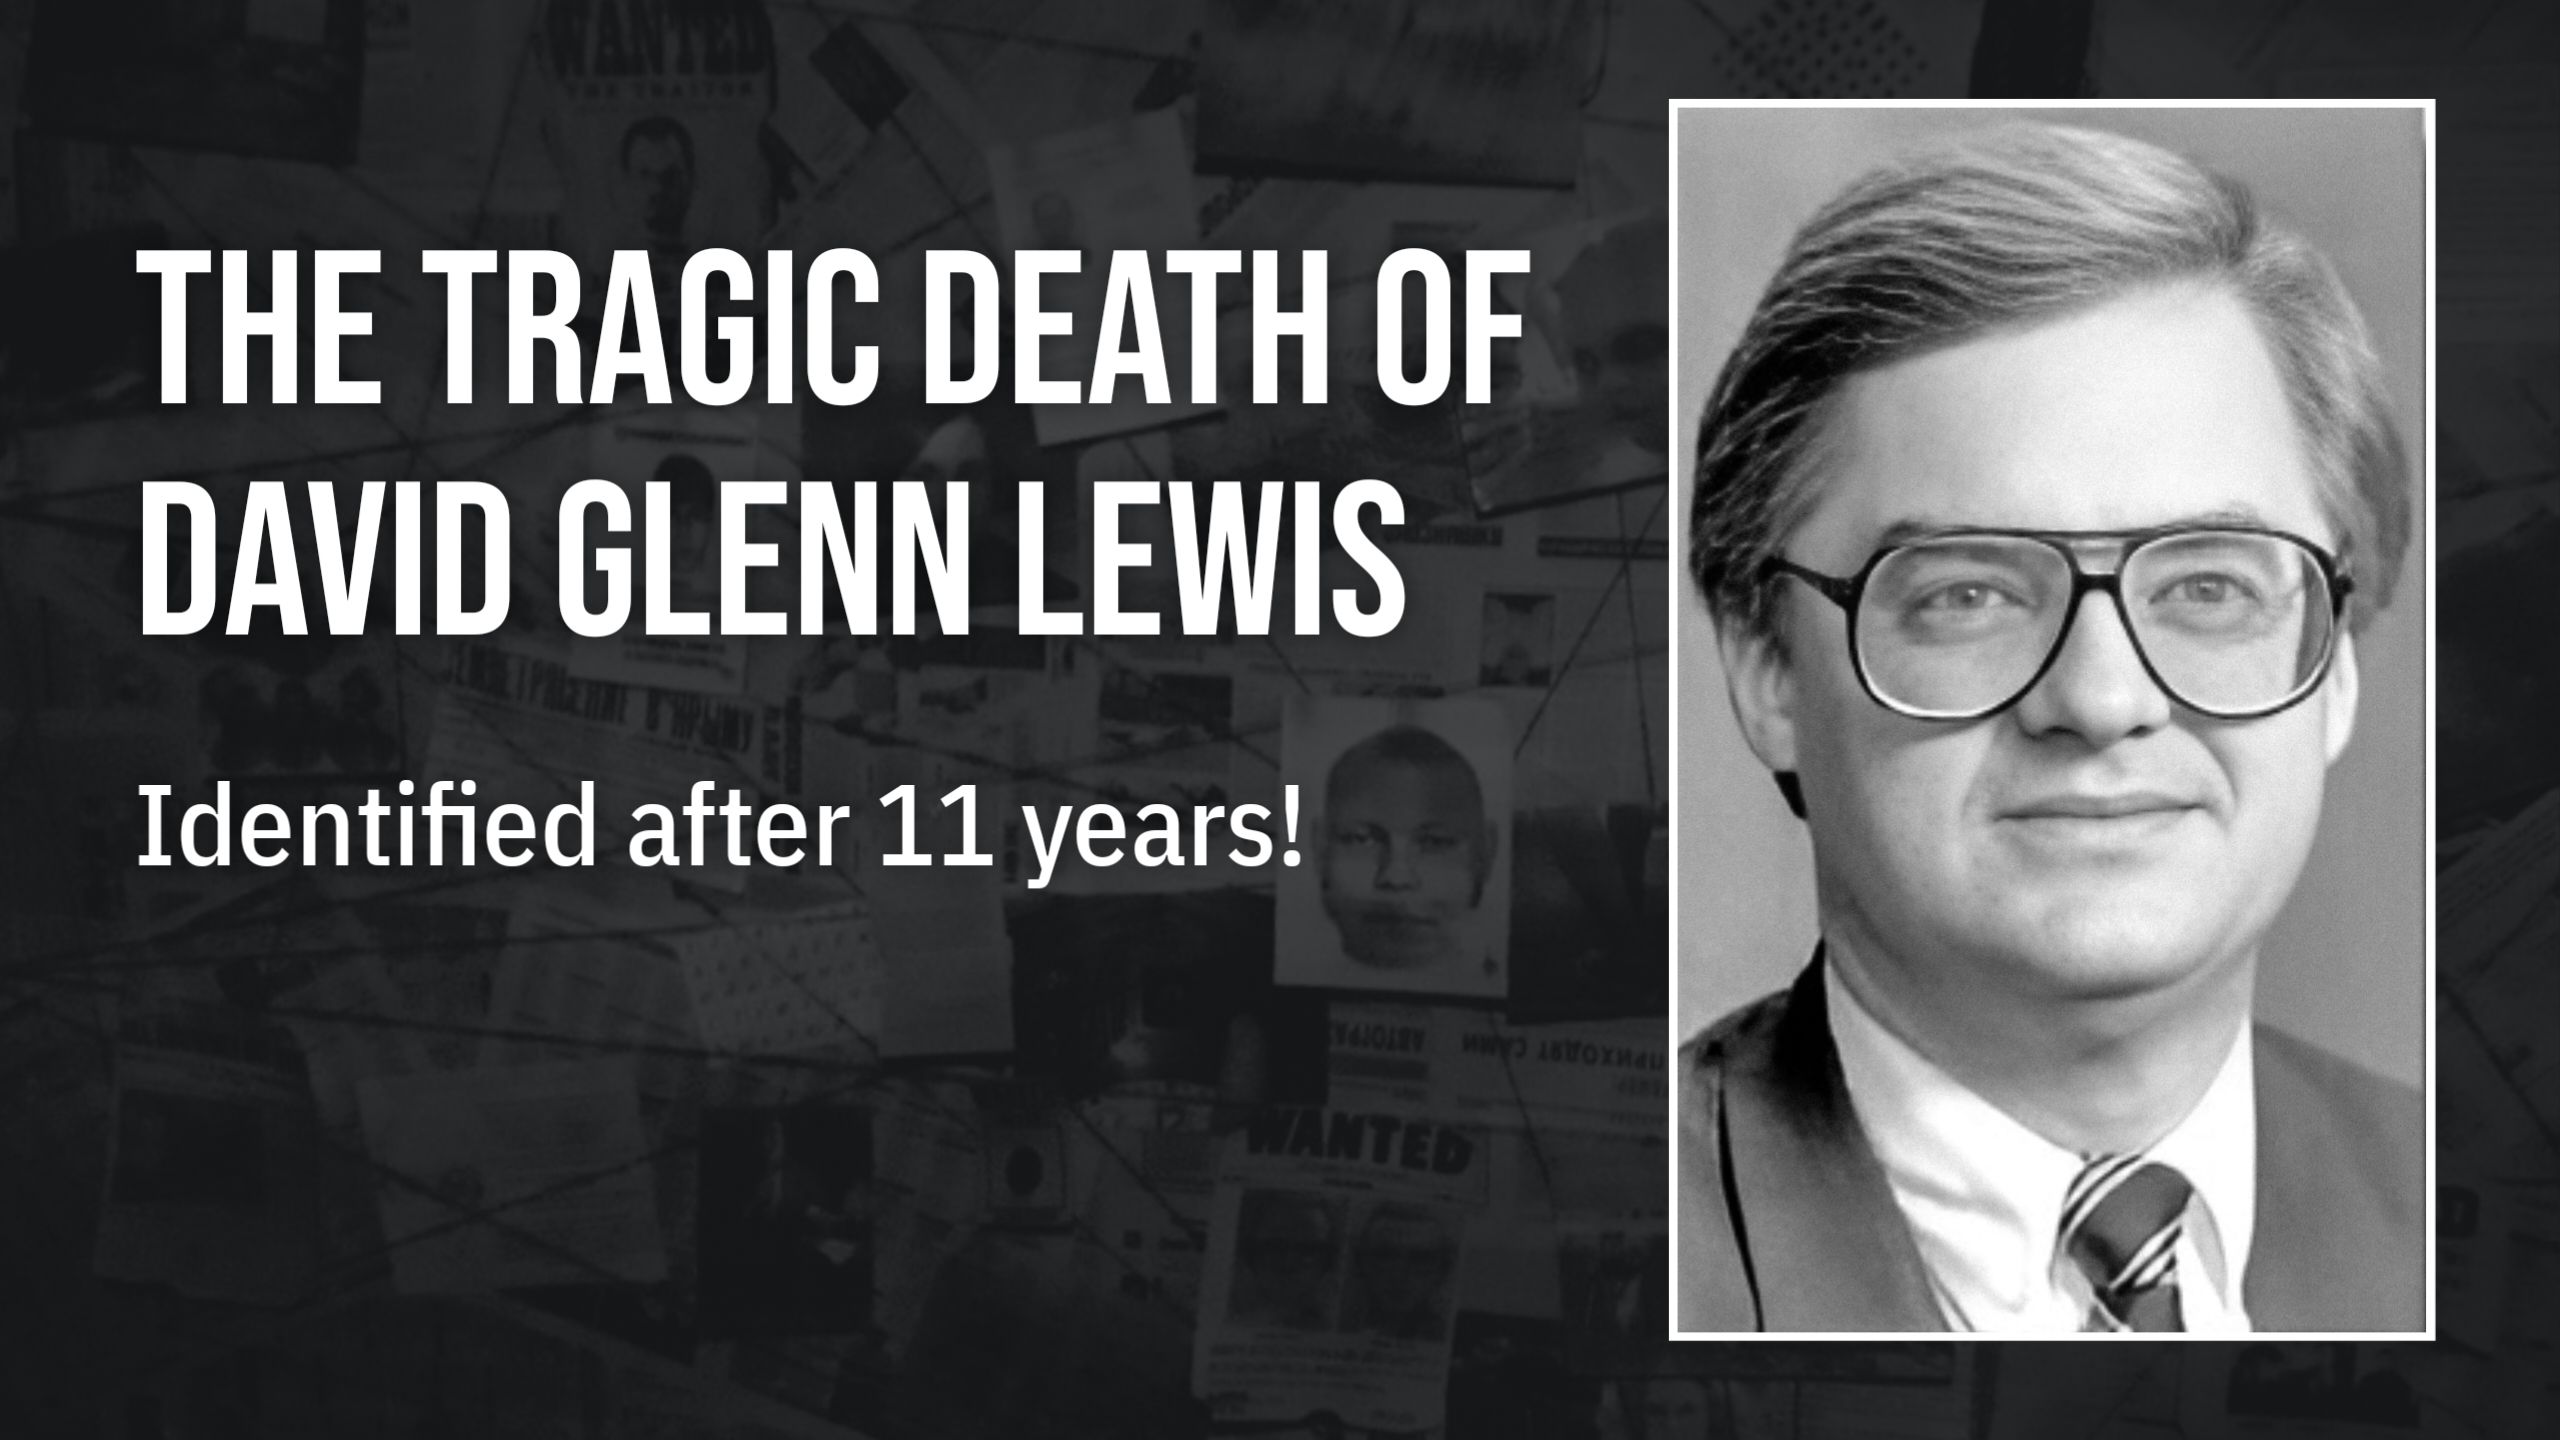 Lub tragic tuag ntawm David Glenn Lewis. Wikimedia Commons / MRU.INK